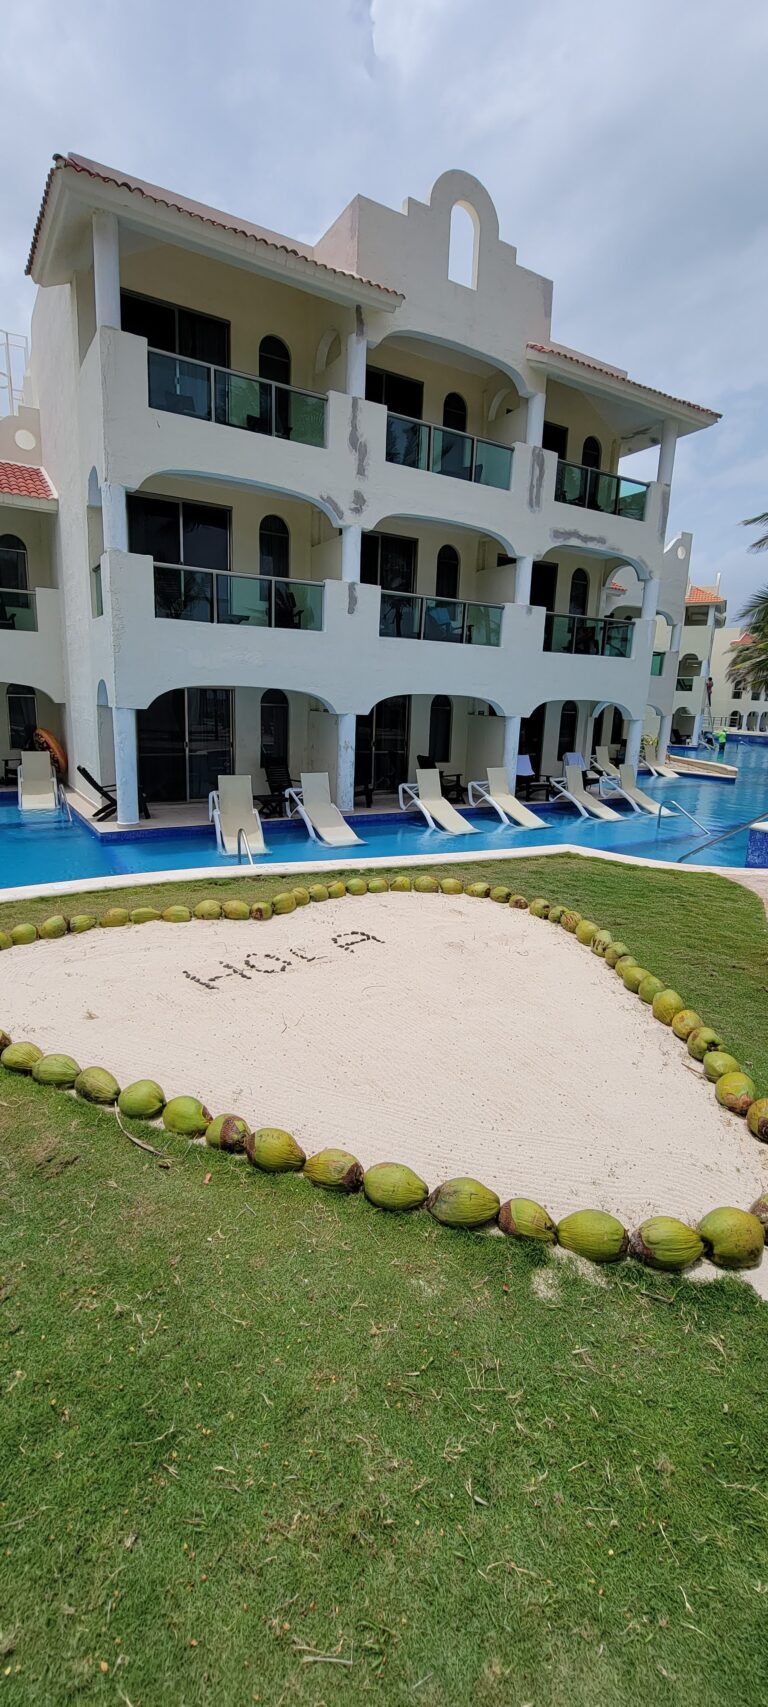 Cancun/Riviera Maya